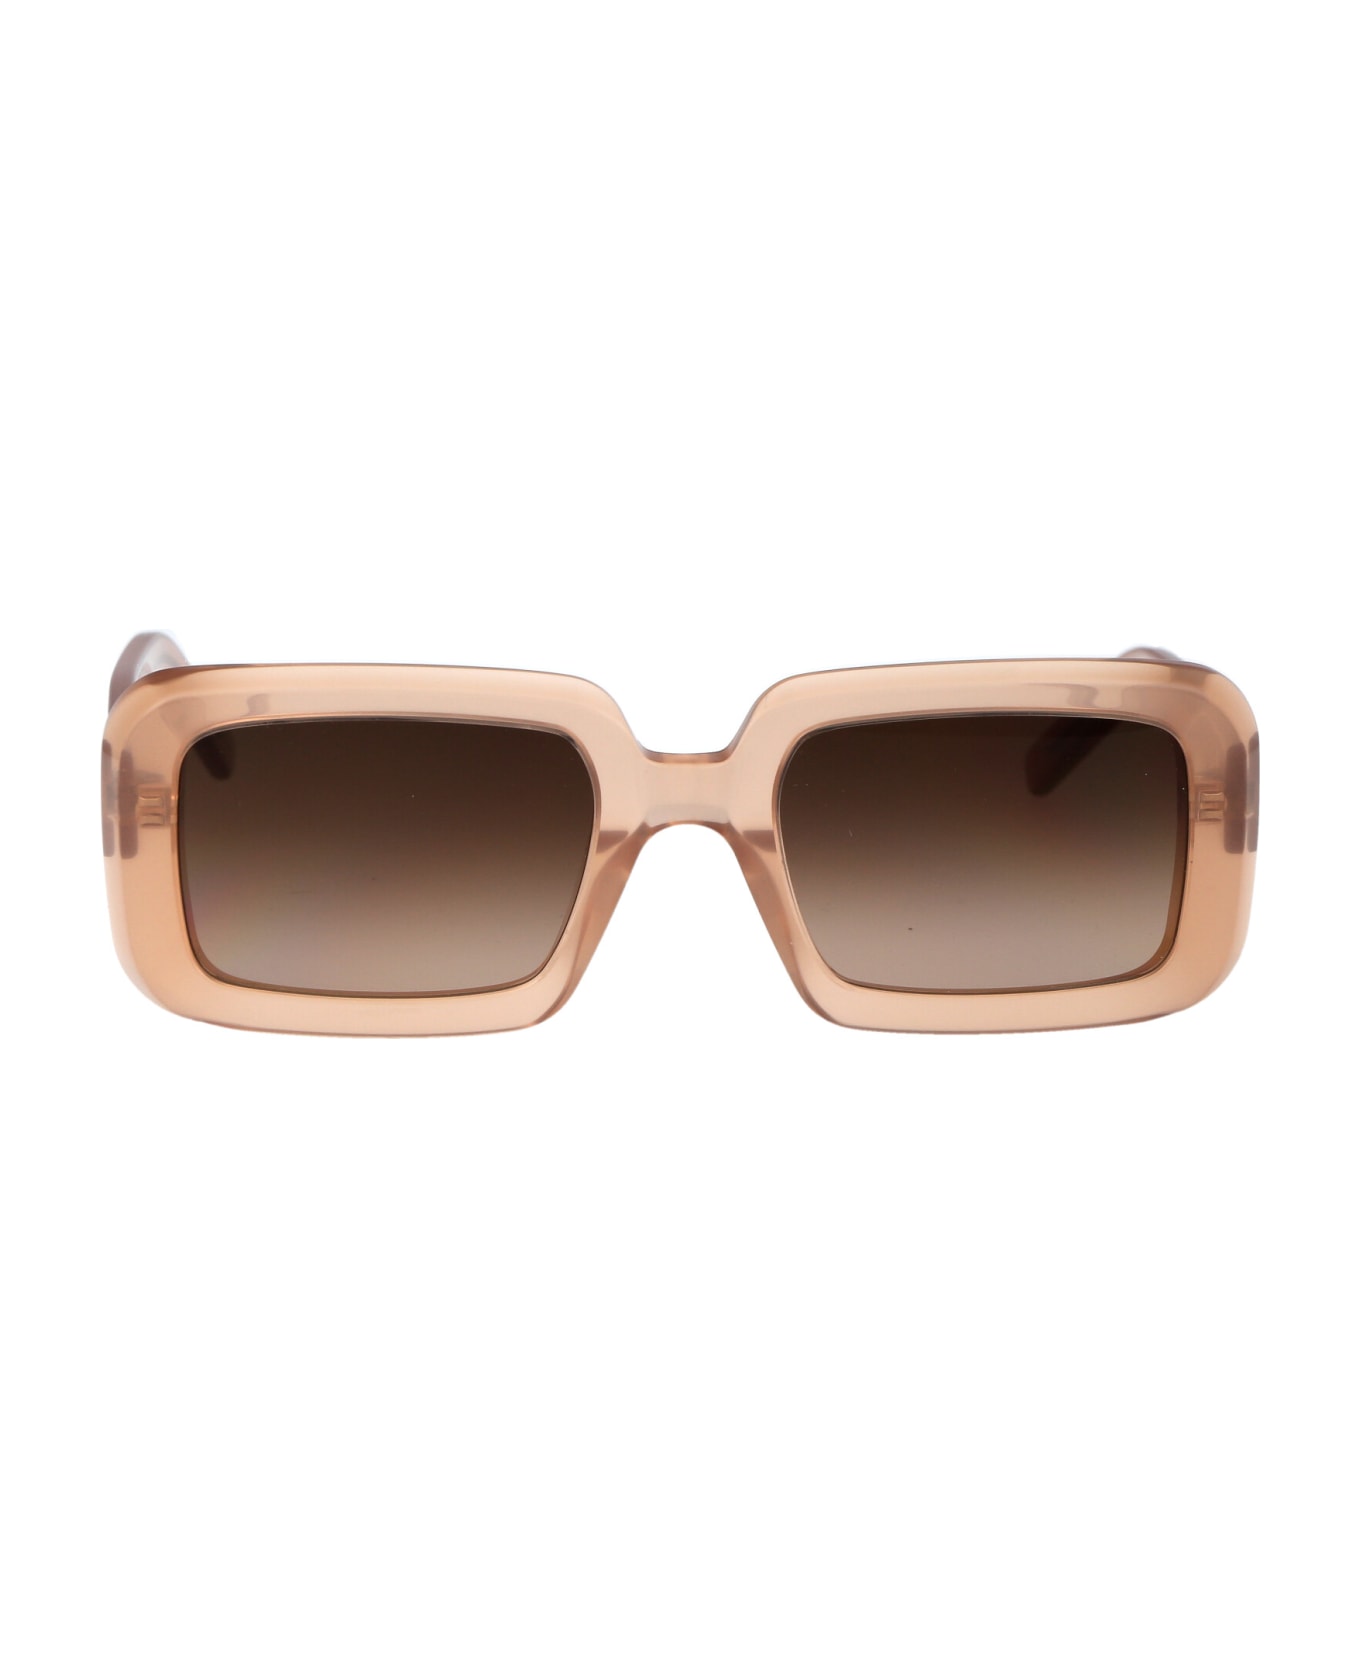 Saint Laurent Eyewear Sl 534 Sunrise Sunglasses - 014 ORANGE ORANGE BROWN サングラス